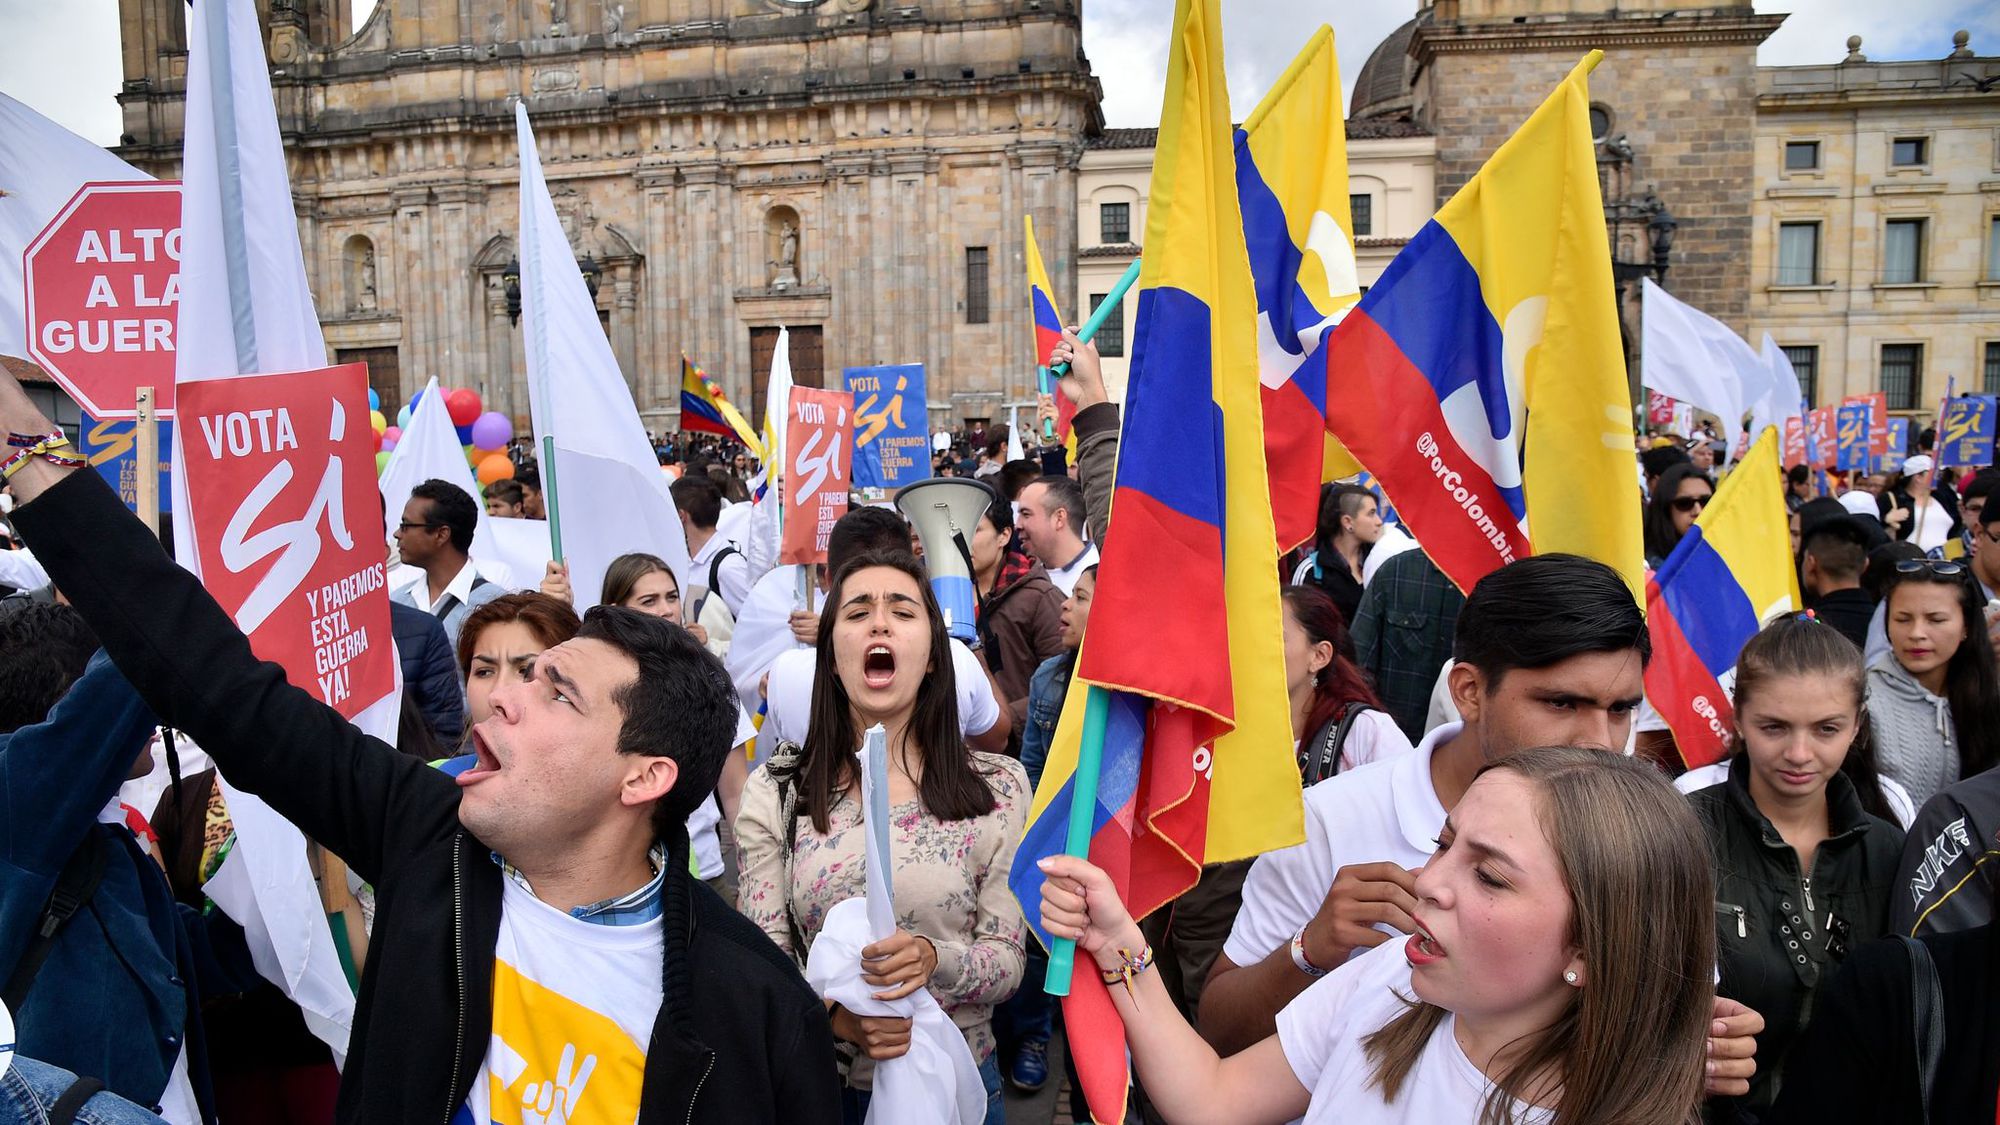 Nouvelle ère pour la Colombie, qui a signé la paix avec les Farc